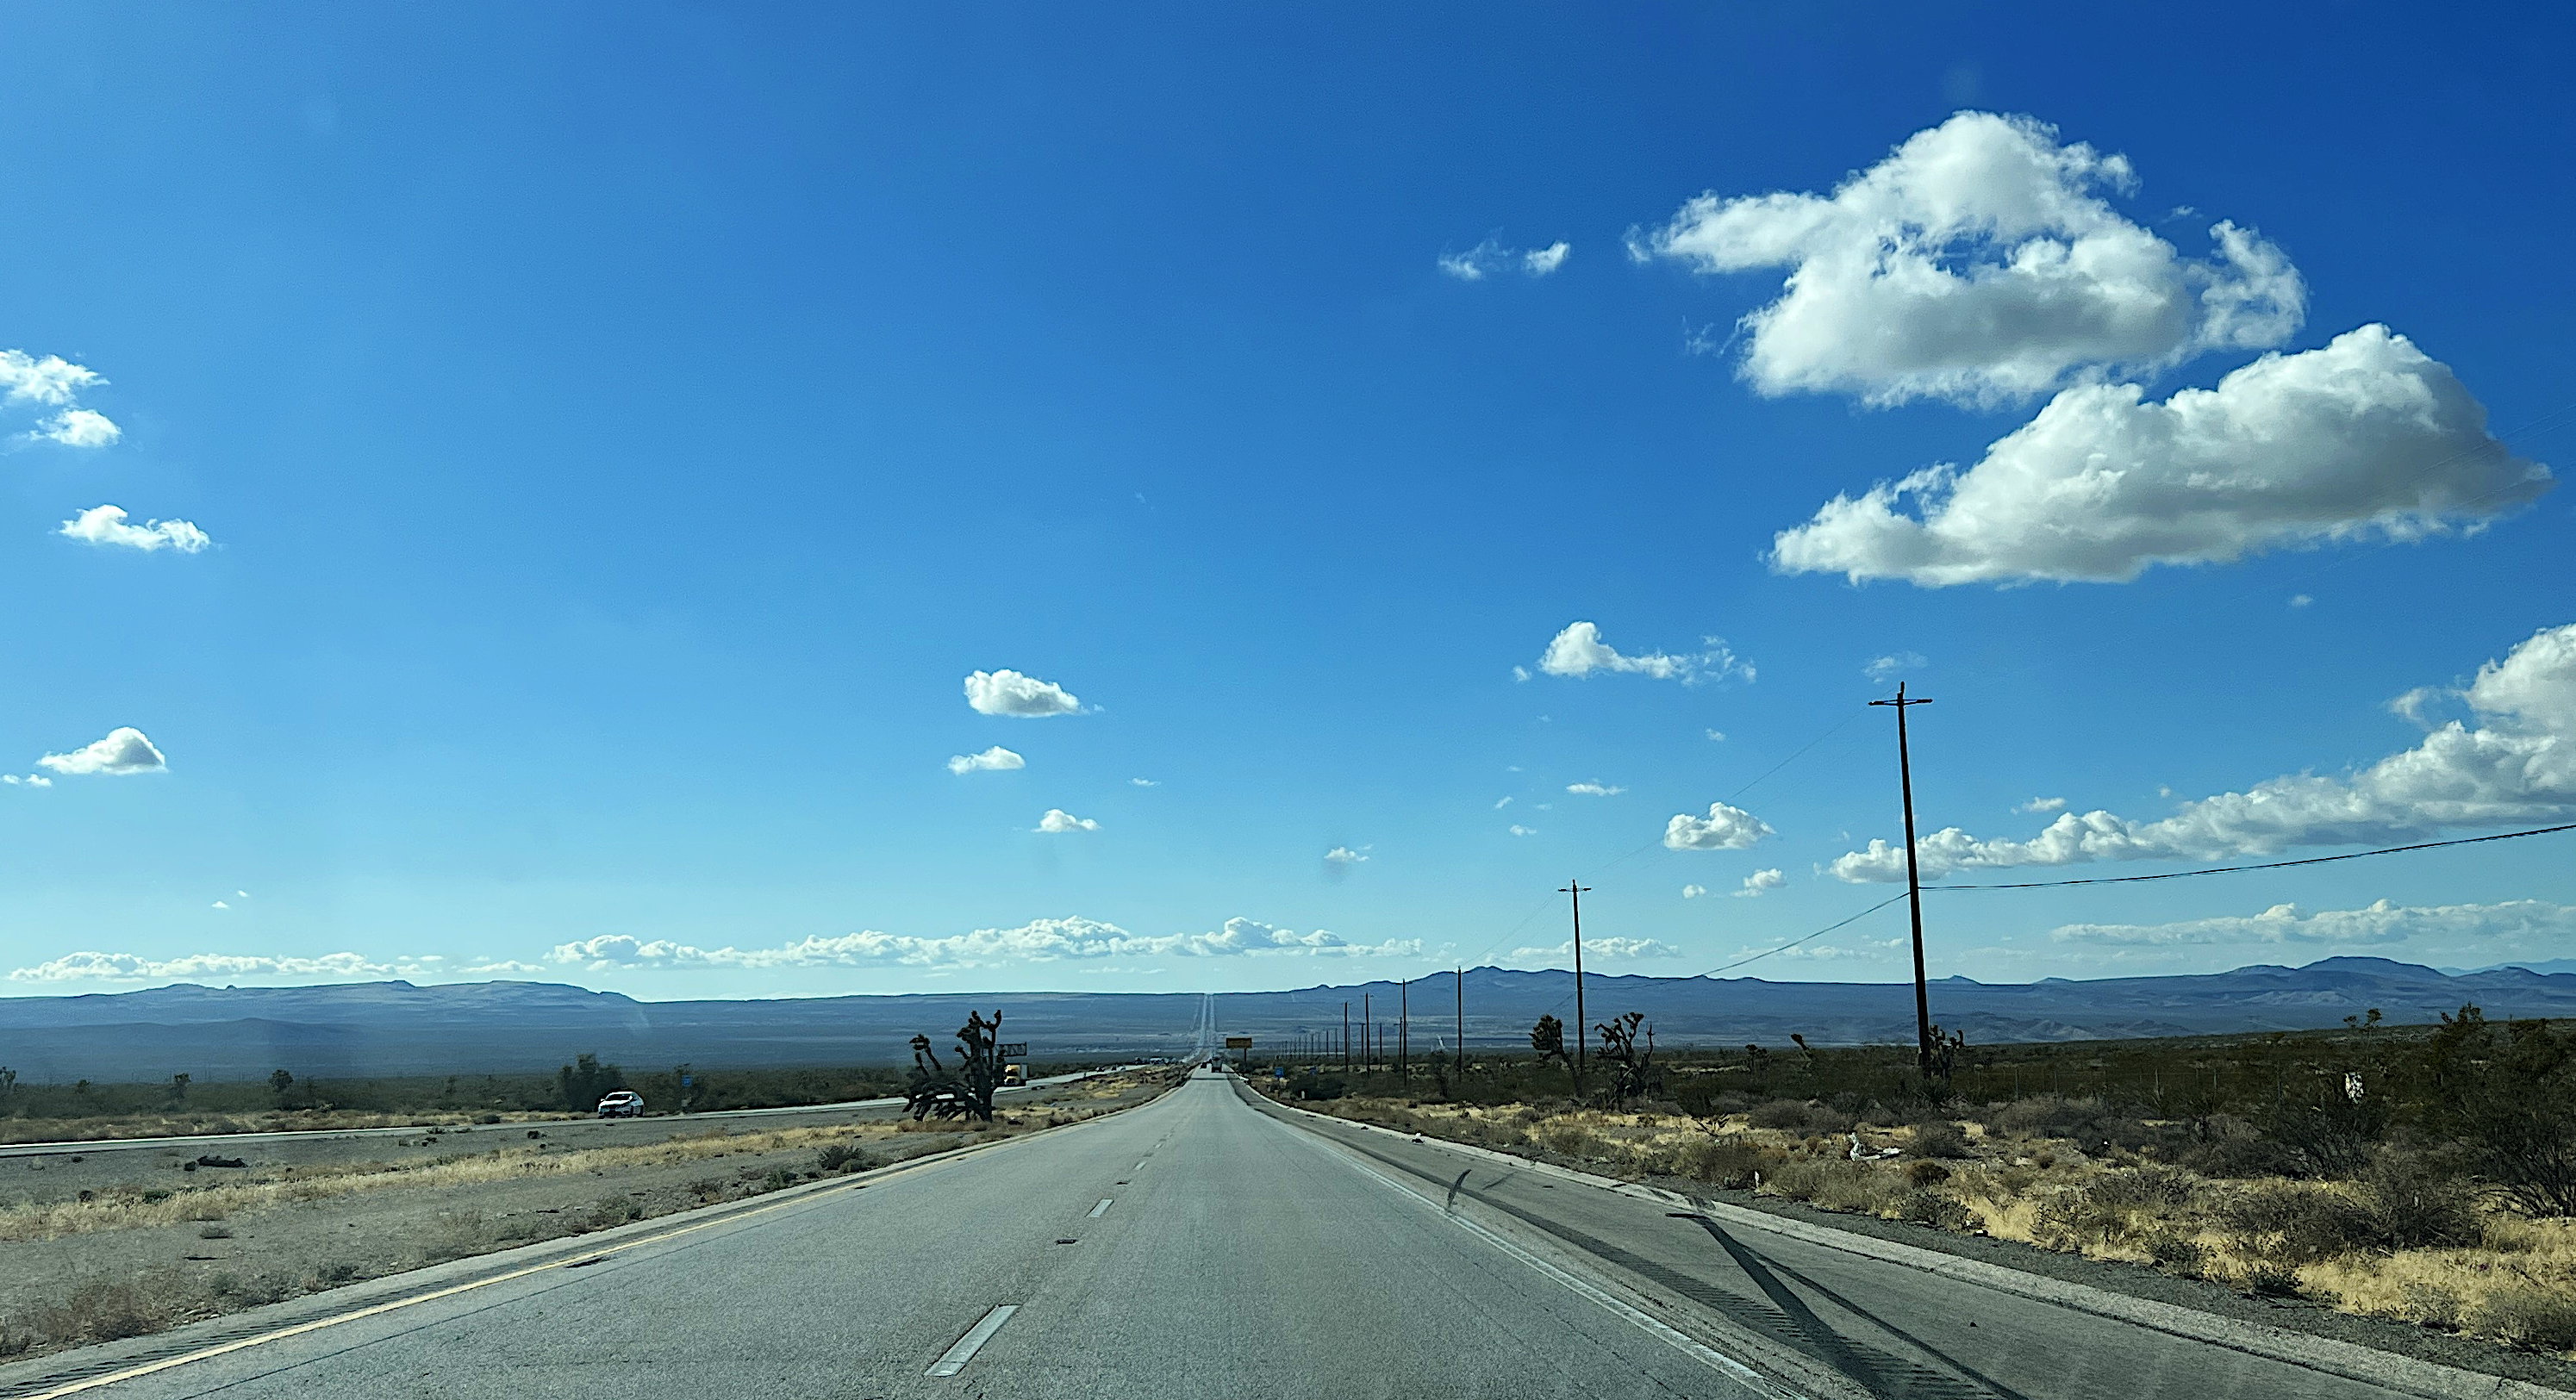 Die pro Richtung zweispurige Autobahn führt bis zum Horizont geradeaus. Der blaue Himmel ist mit ein paar Wattebäuschen verziert.